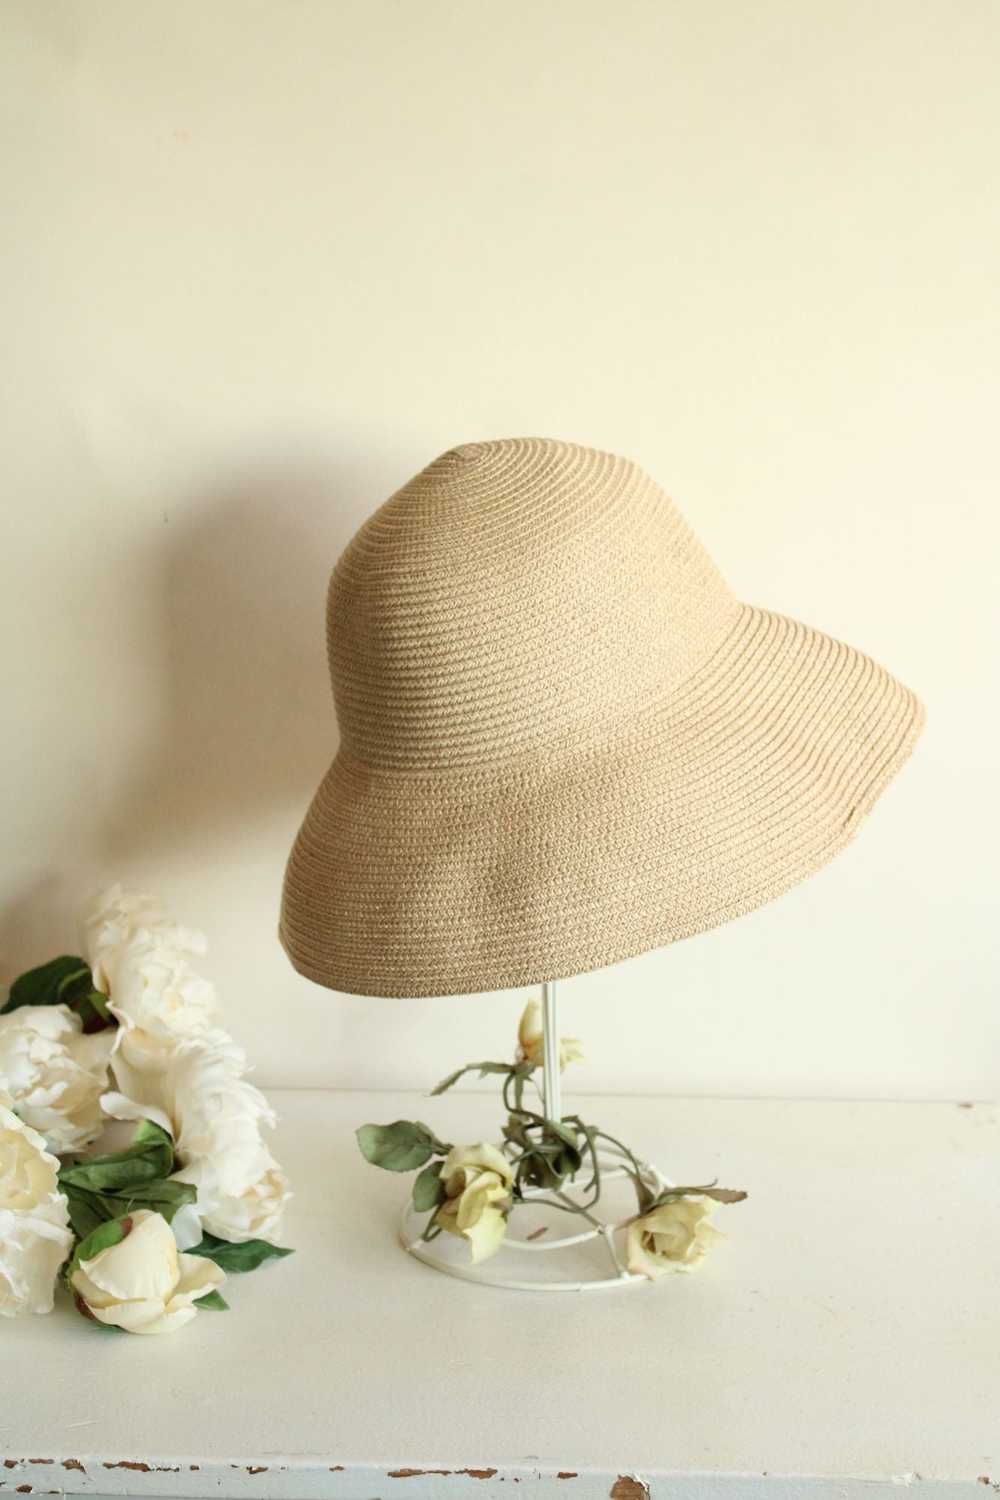 Betmar Womens Sun Hat, Straw-Like, Beige Woven - image 6